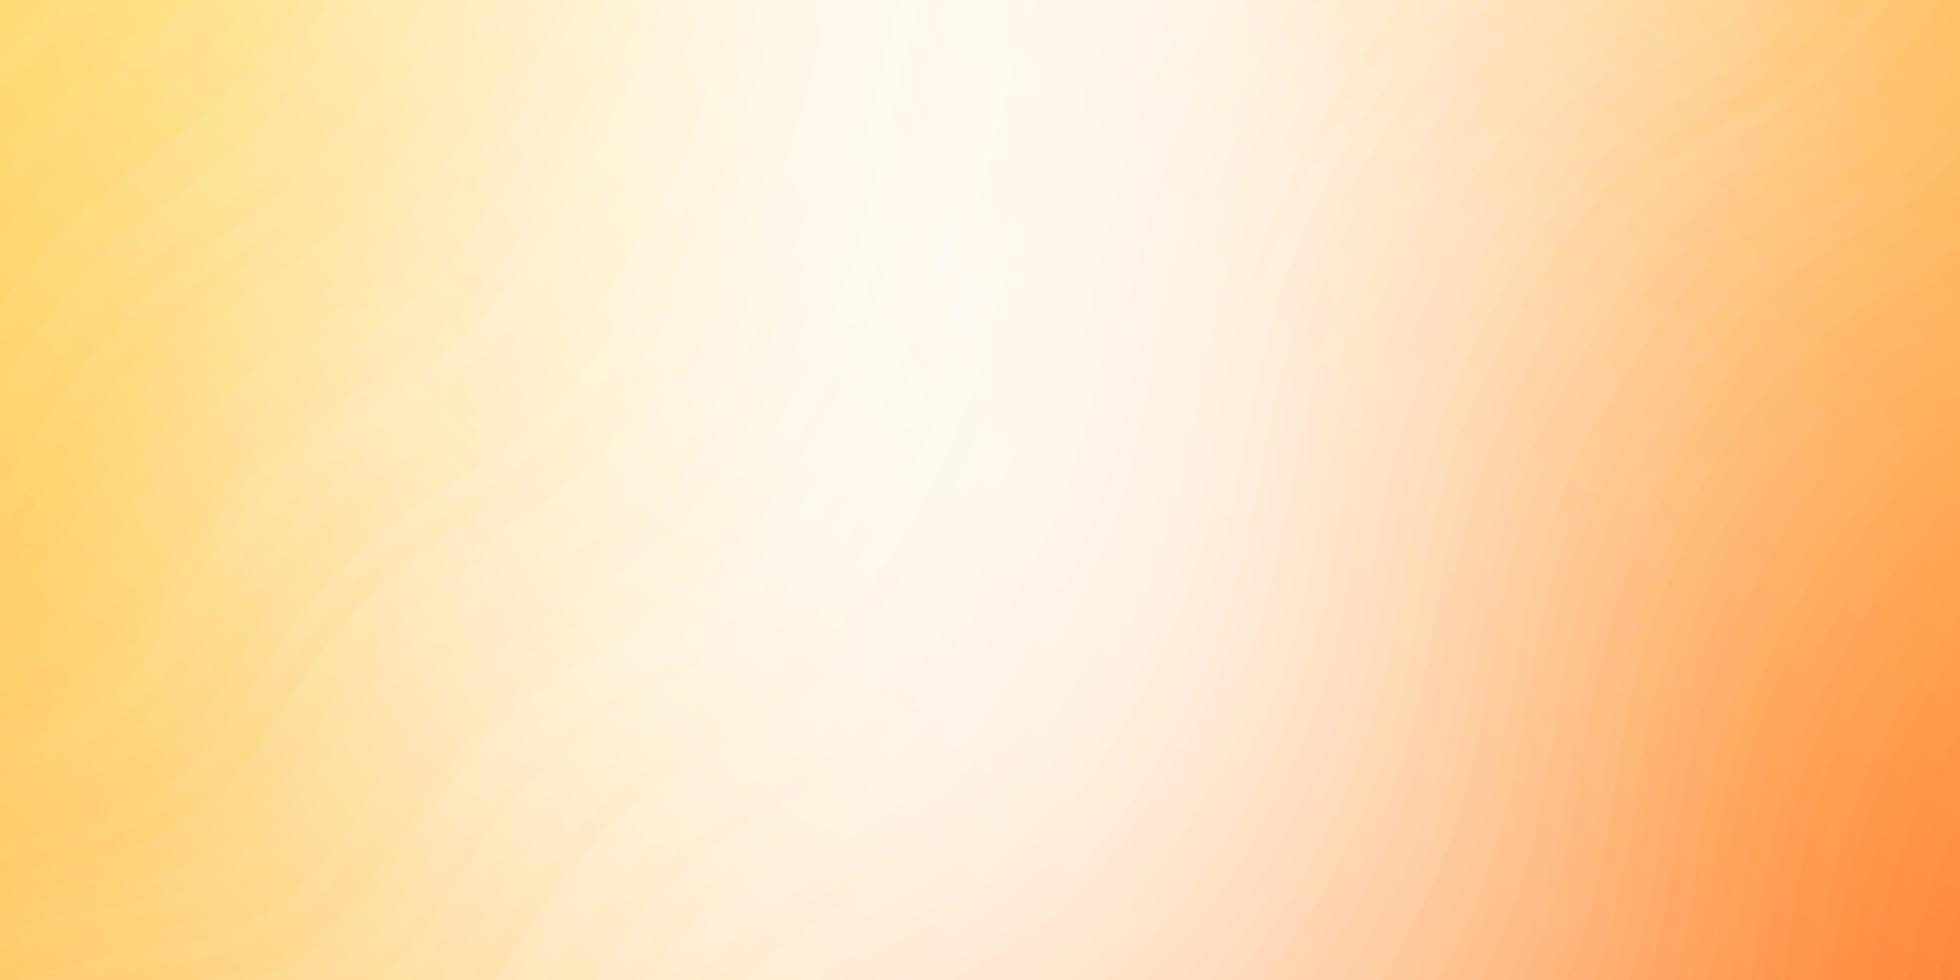 sfondo vettoriale arancione chiaro con linee piegate. illustrazione astratta con fiocchi sfumati. modello per annunci, spot pubblicitari.